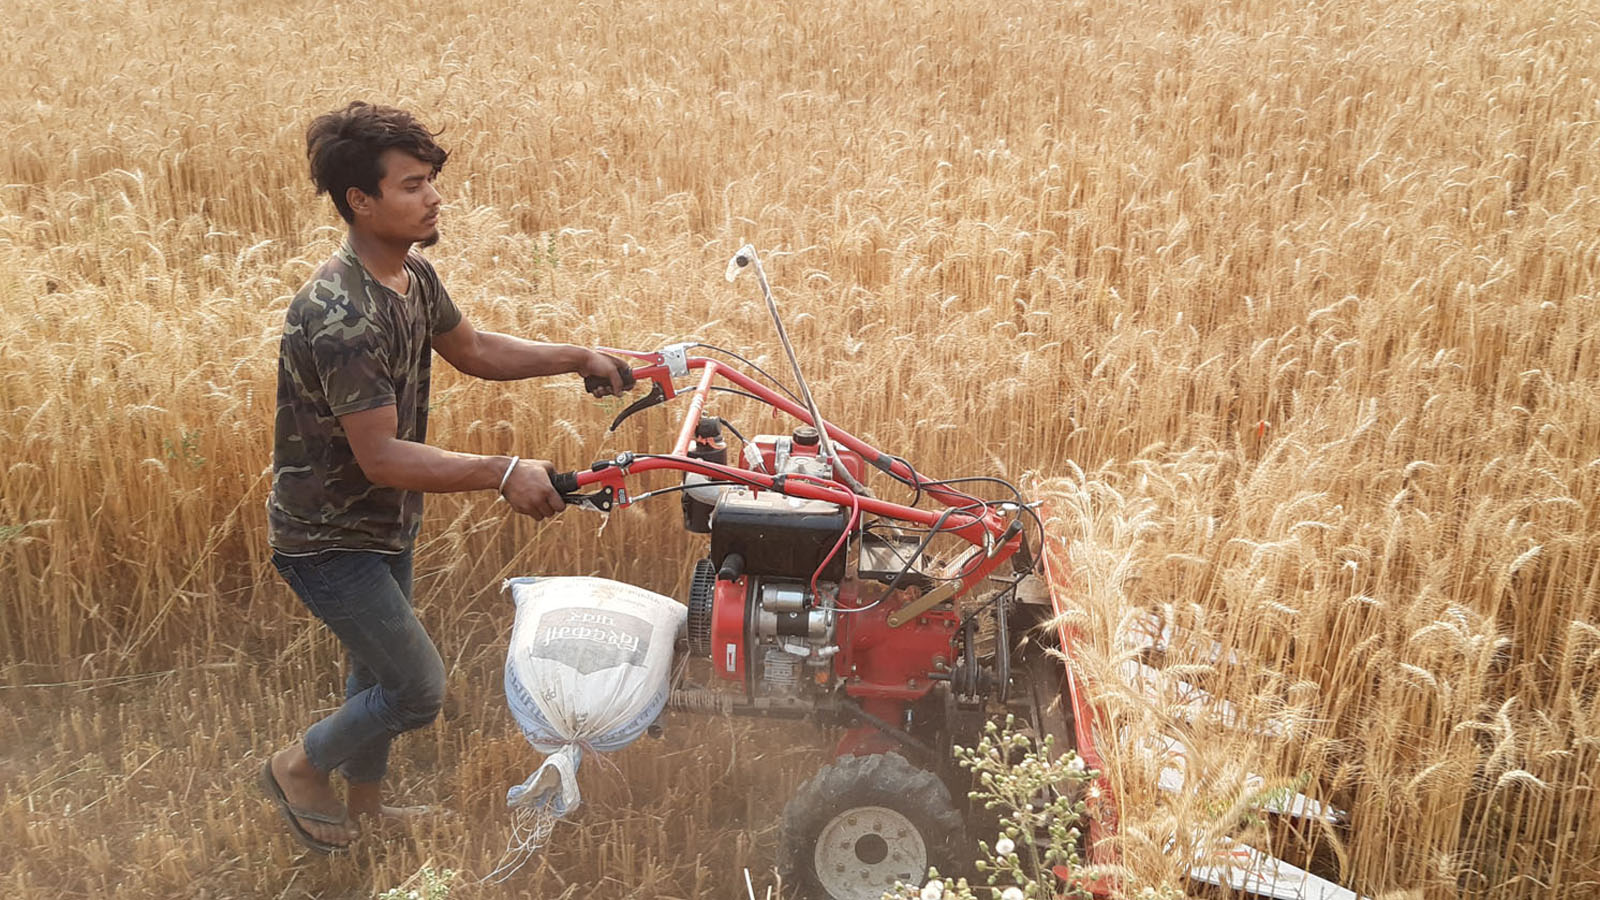 प्रविधिले ल्याएको सहजताः पाकेको गहुँ काट्दै किसान